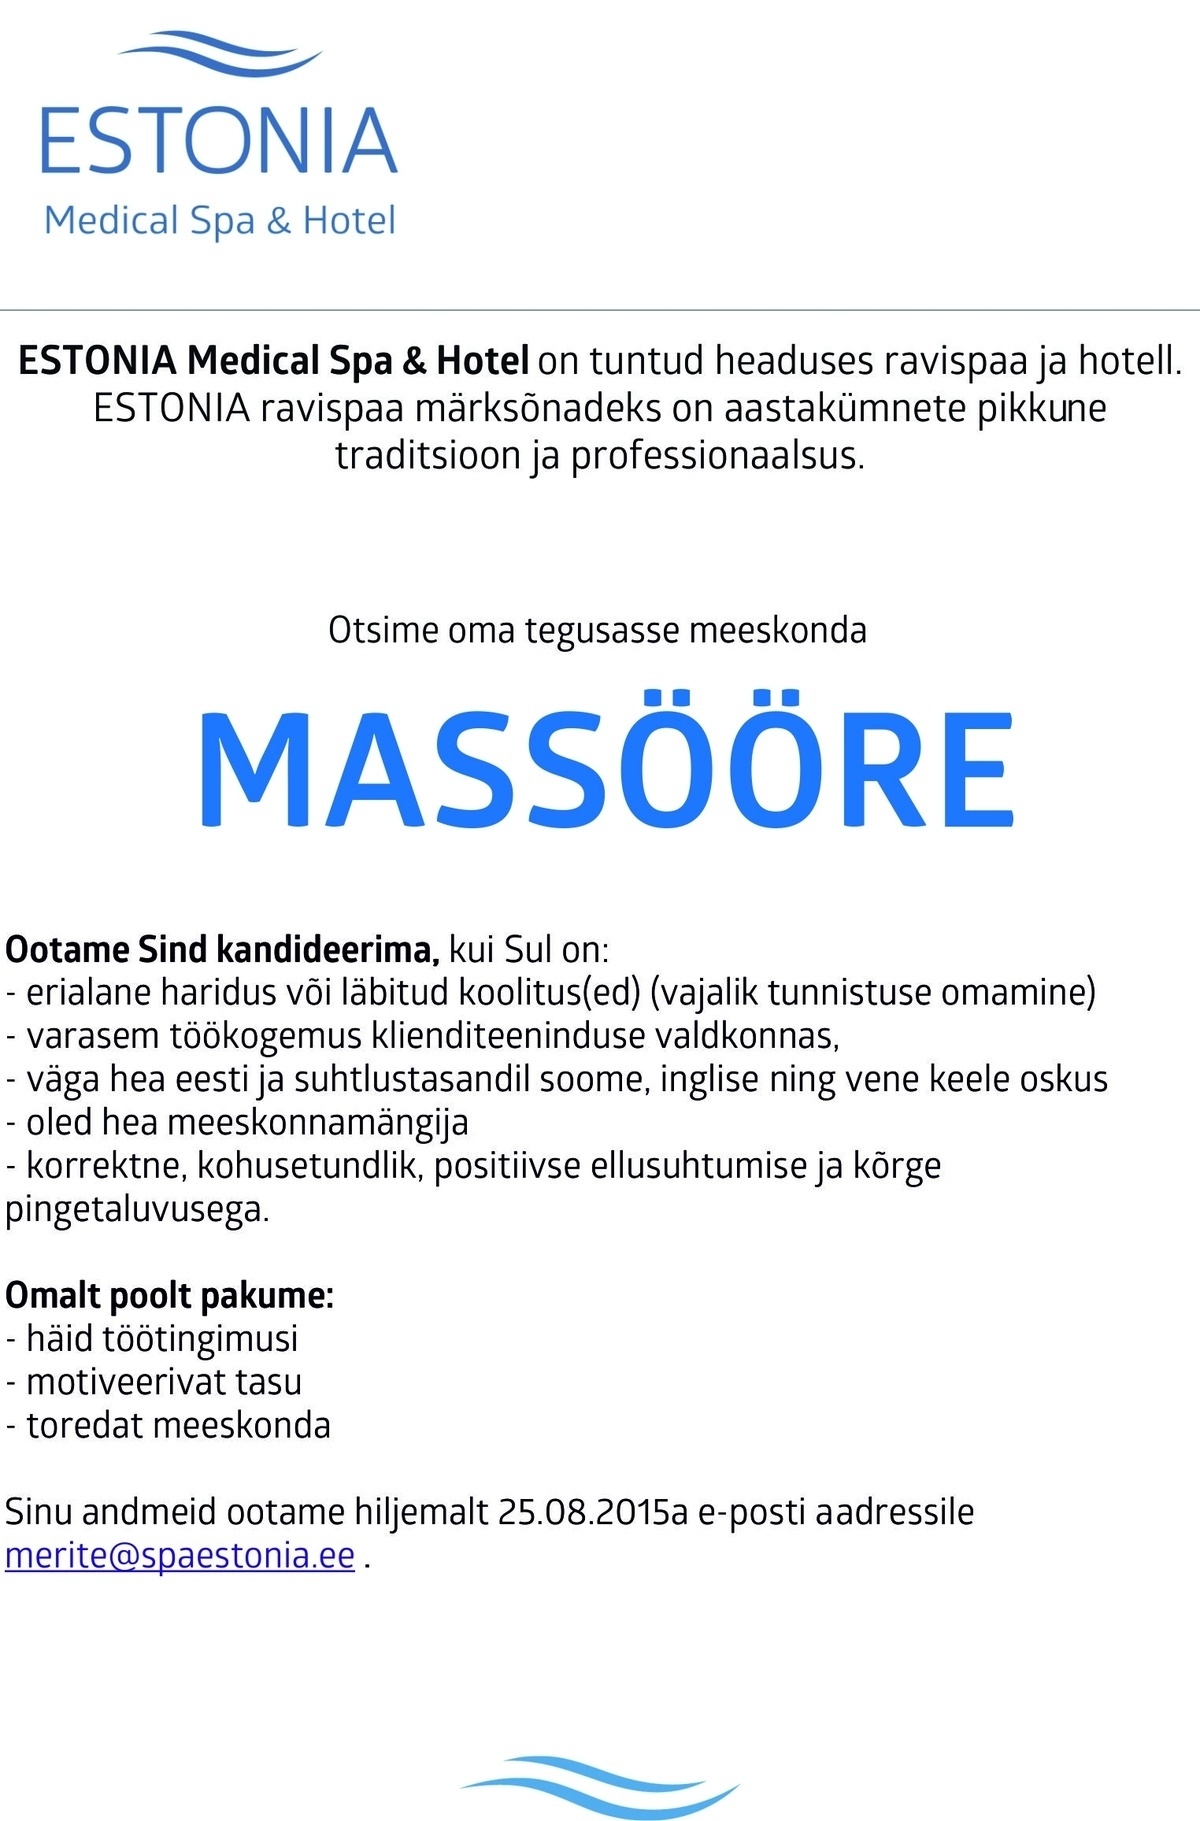 Estonia Spa Hotels AS Massöör